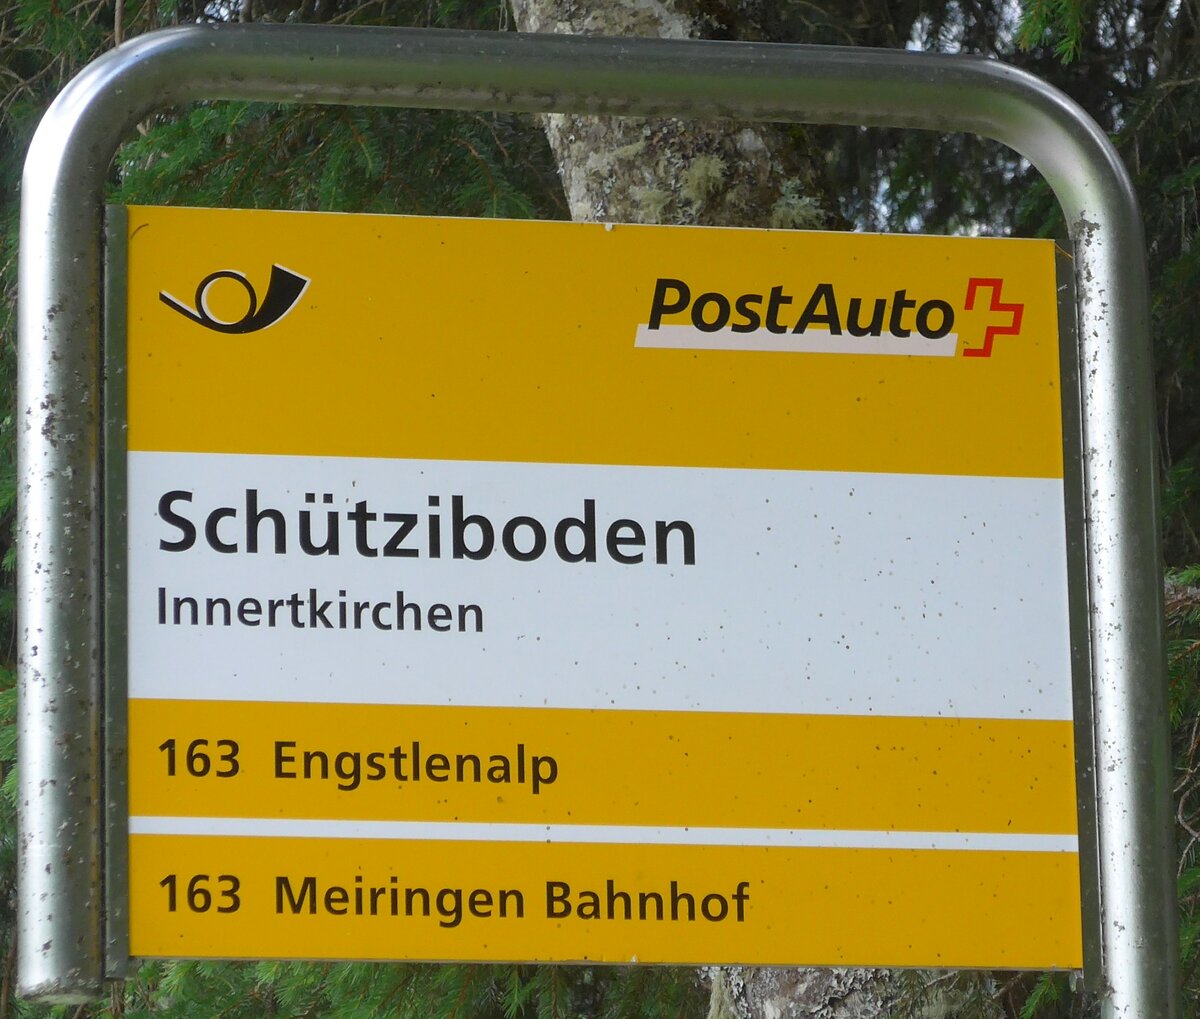 (182'127) - PostAuto-Haltestellenschild - Innertkirchen, Schtziboden - am 16. Juli 2017